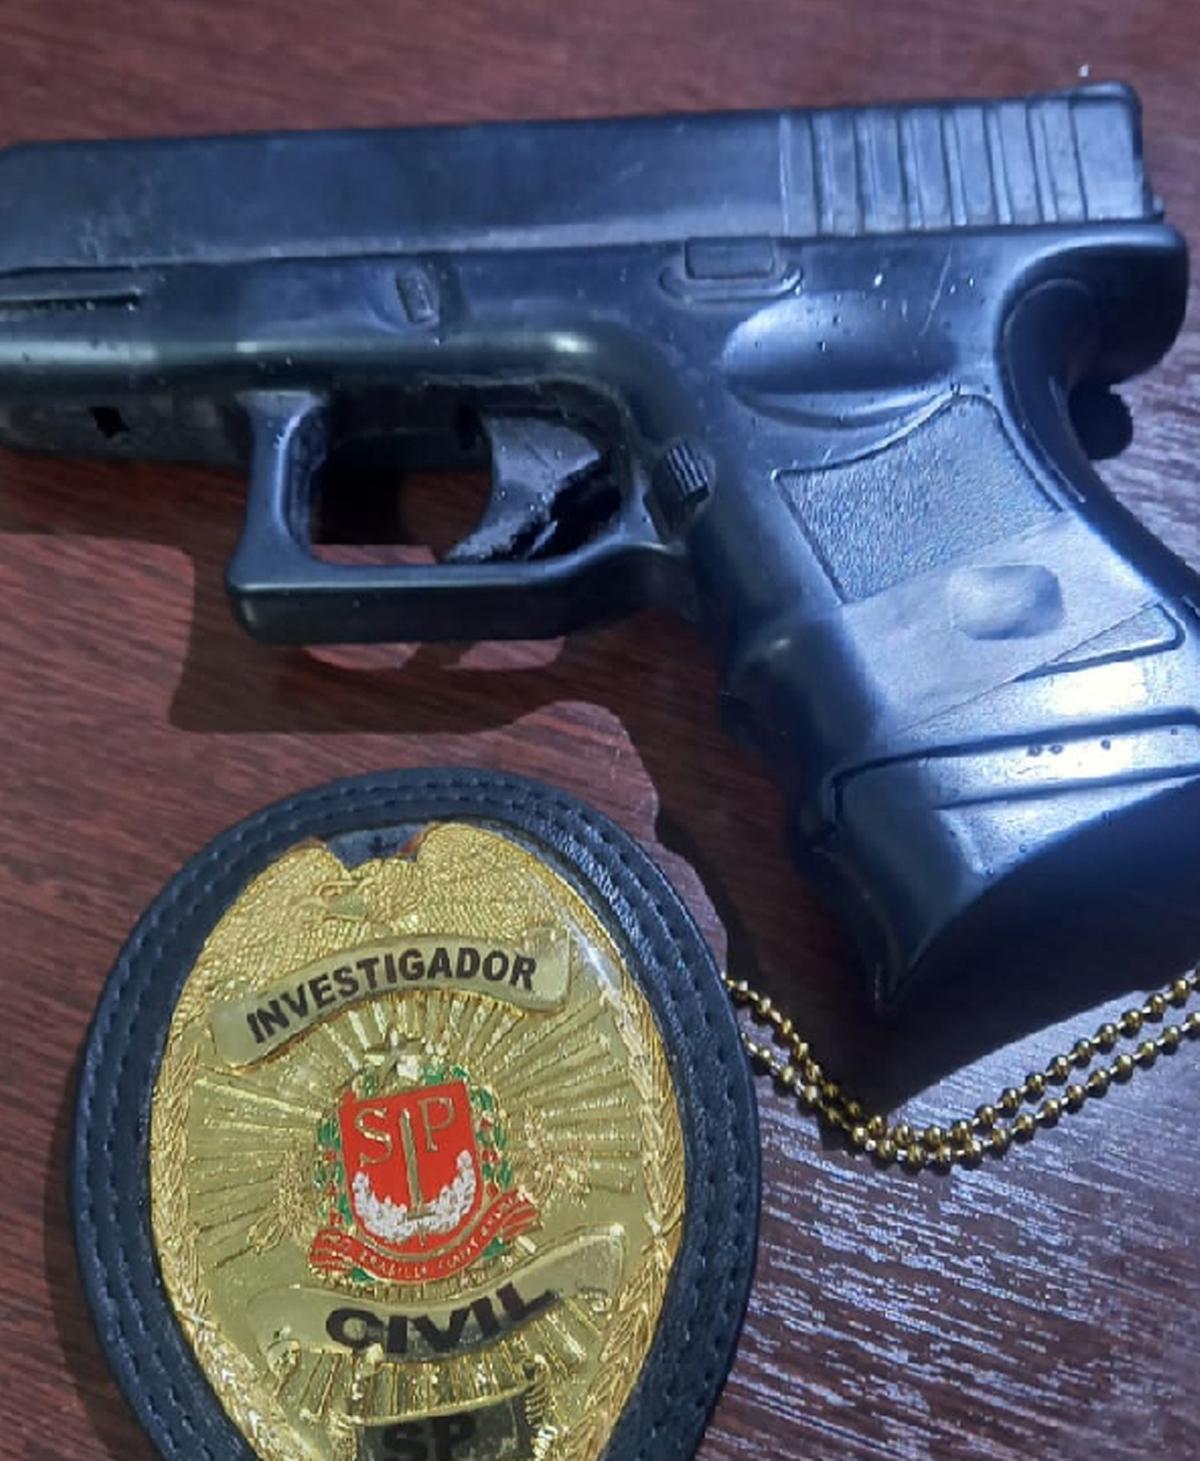 Arma de brinquedo e distintivo falso da Polícia Civil utilizados pelo falso policial em suas abordagens (Divulgação)